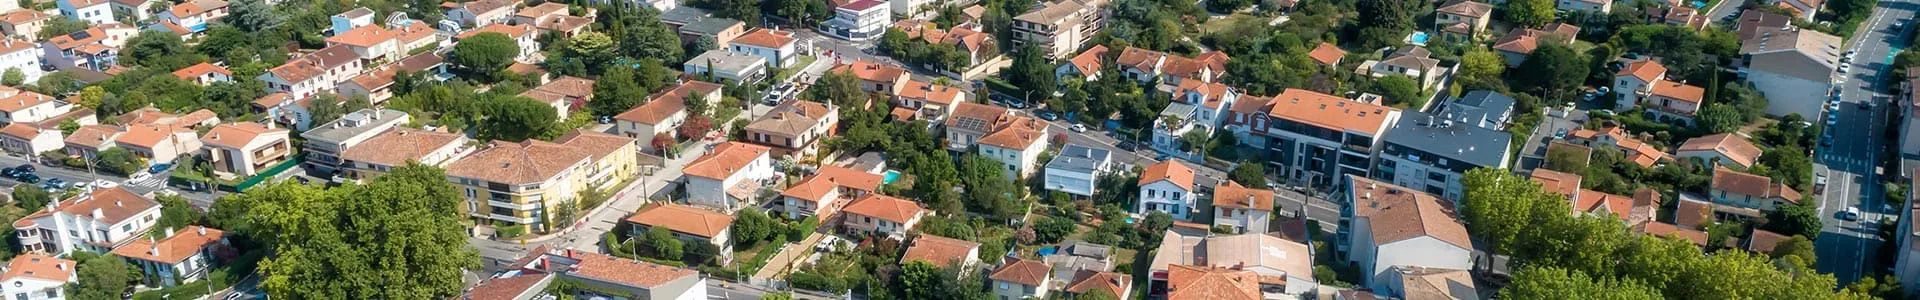 Vue aérienne du quartier autour de la résidence l'Altitude